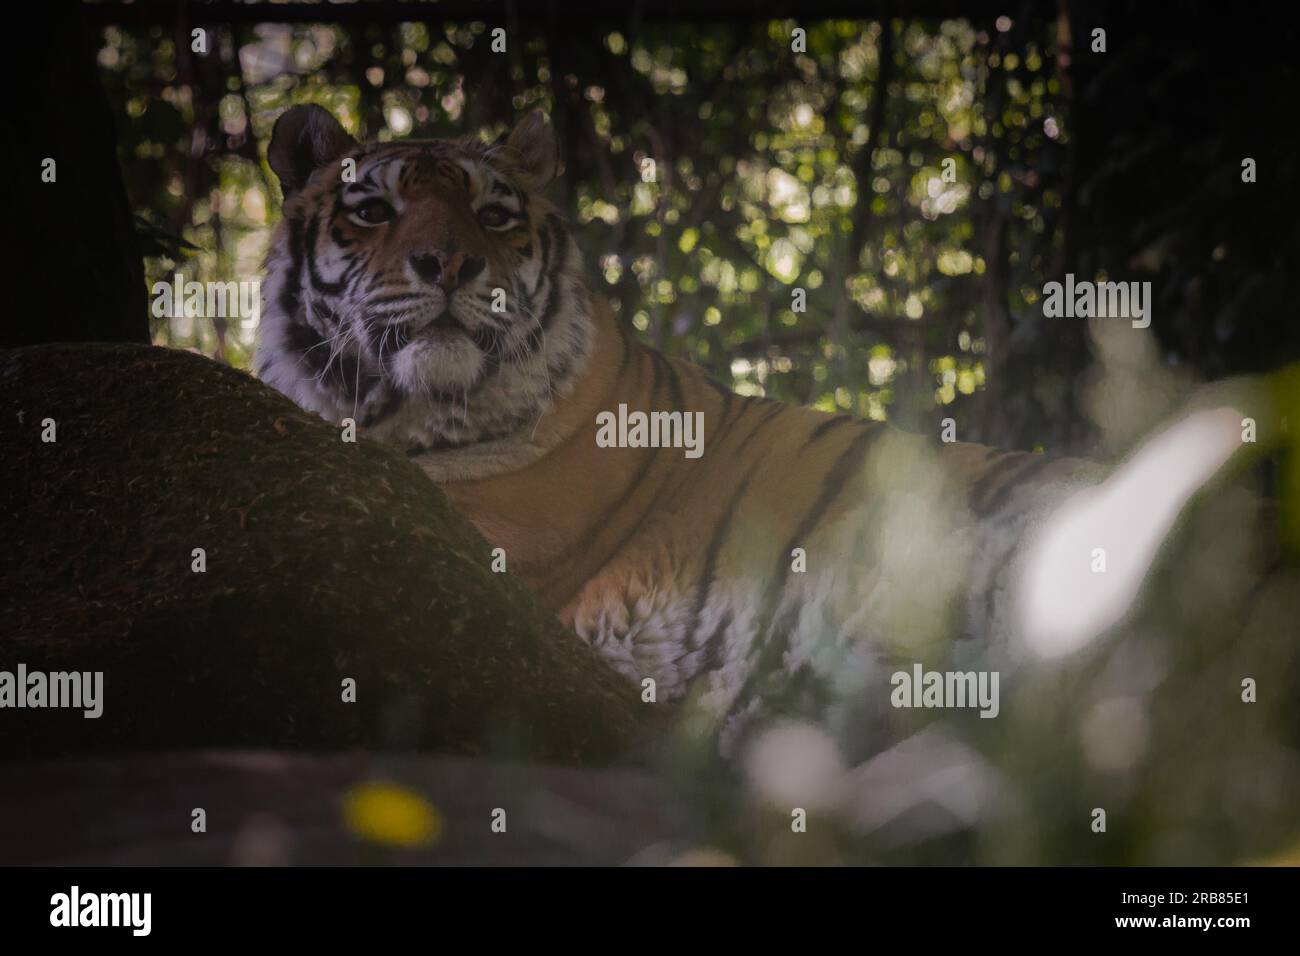 Dieses Foto zeigt einen erwachsenen Tiger, der in einem Wildpark lebt. Der Tiger sieht entspannt und neugierig aus und genießt die geräumige und natürliche Umgebung Stockfoto